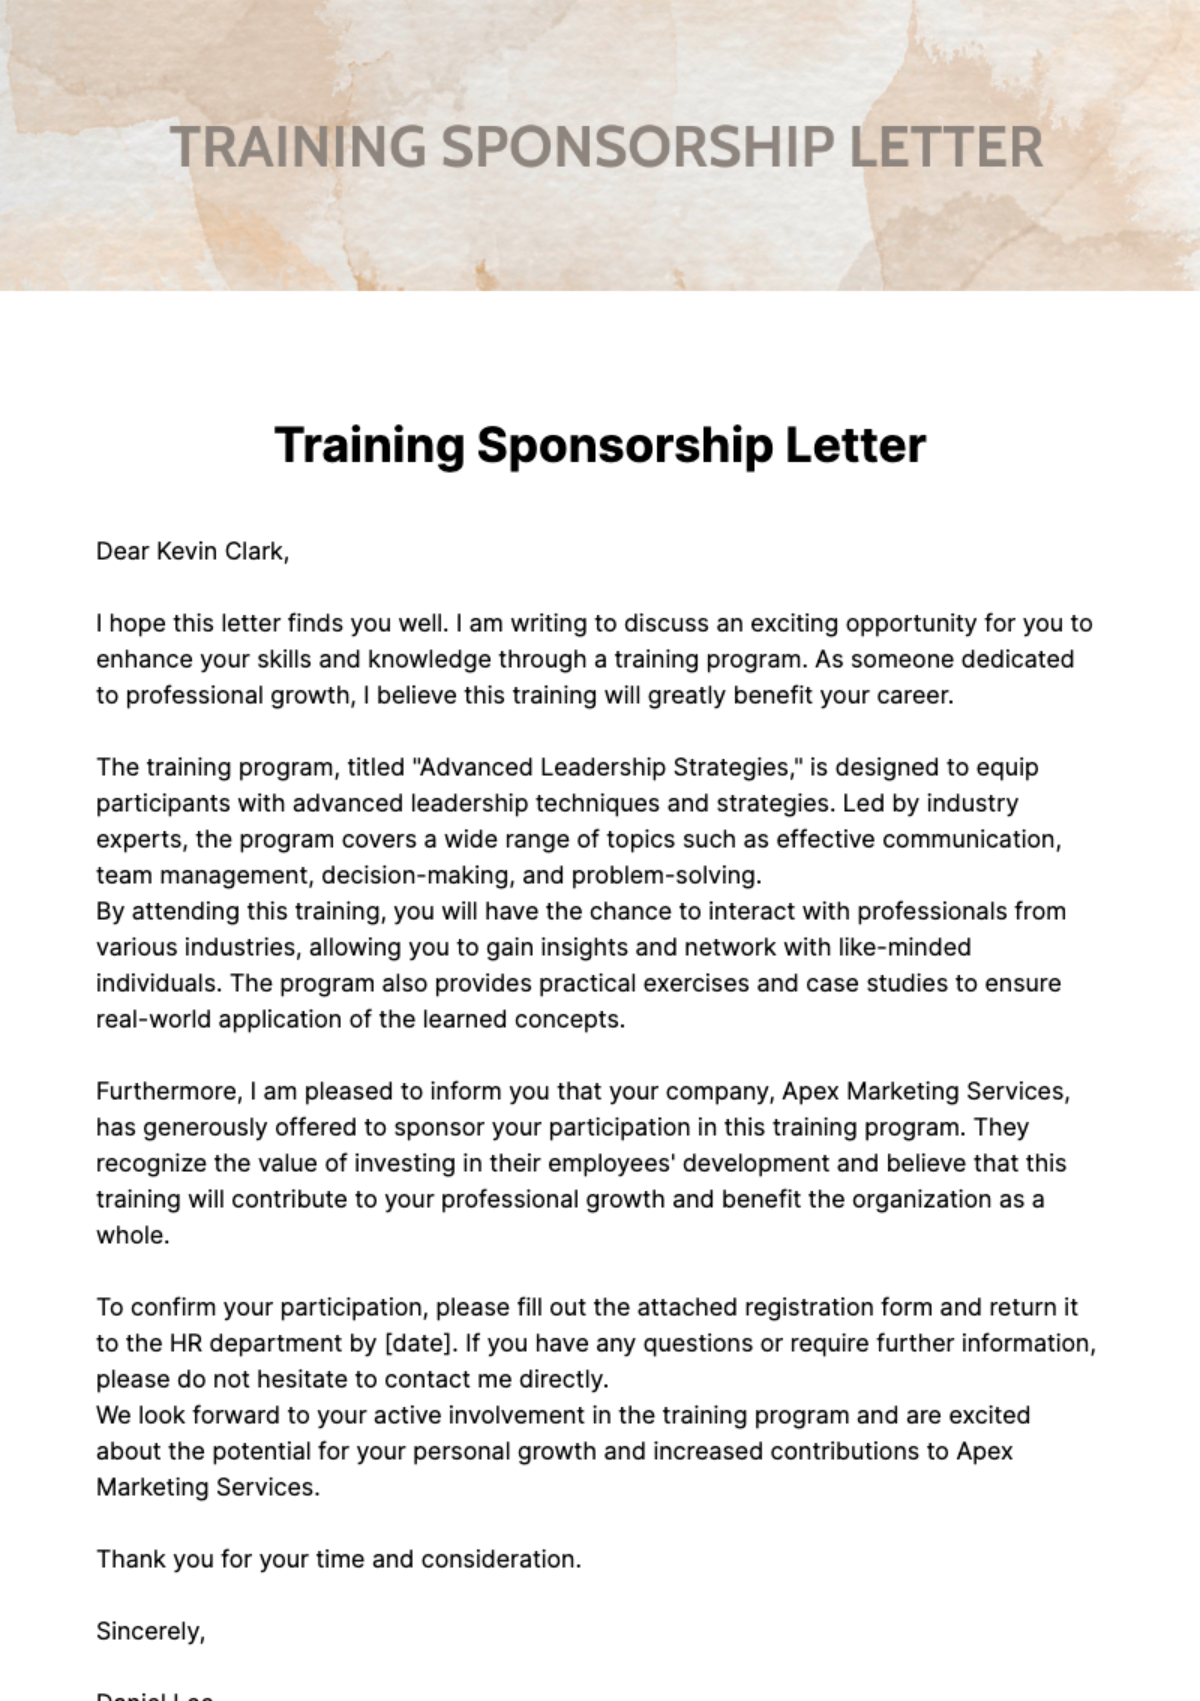 Training Sponsorship Letter Template